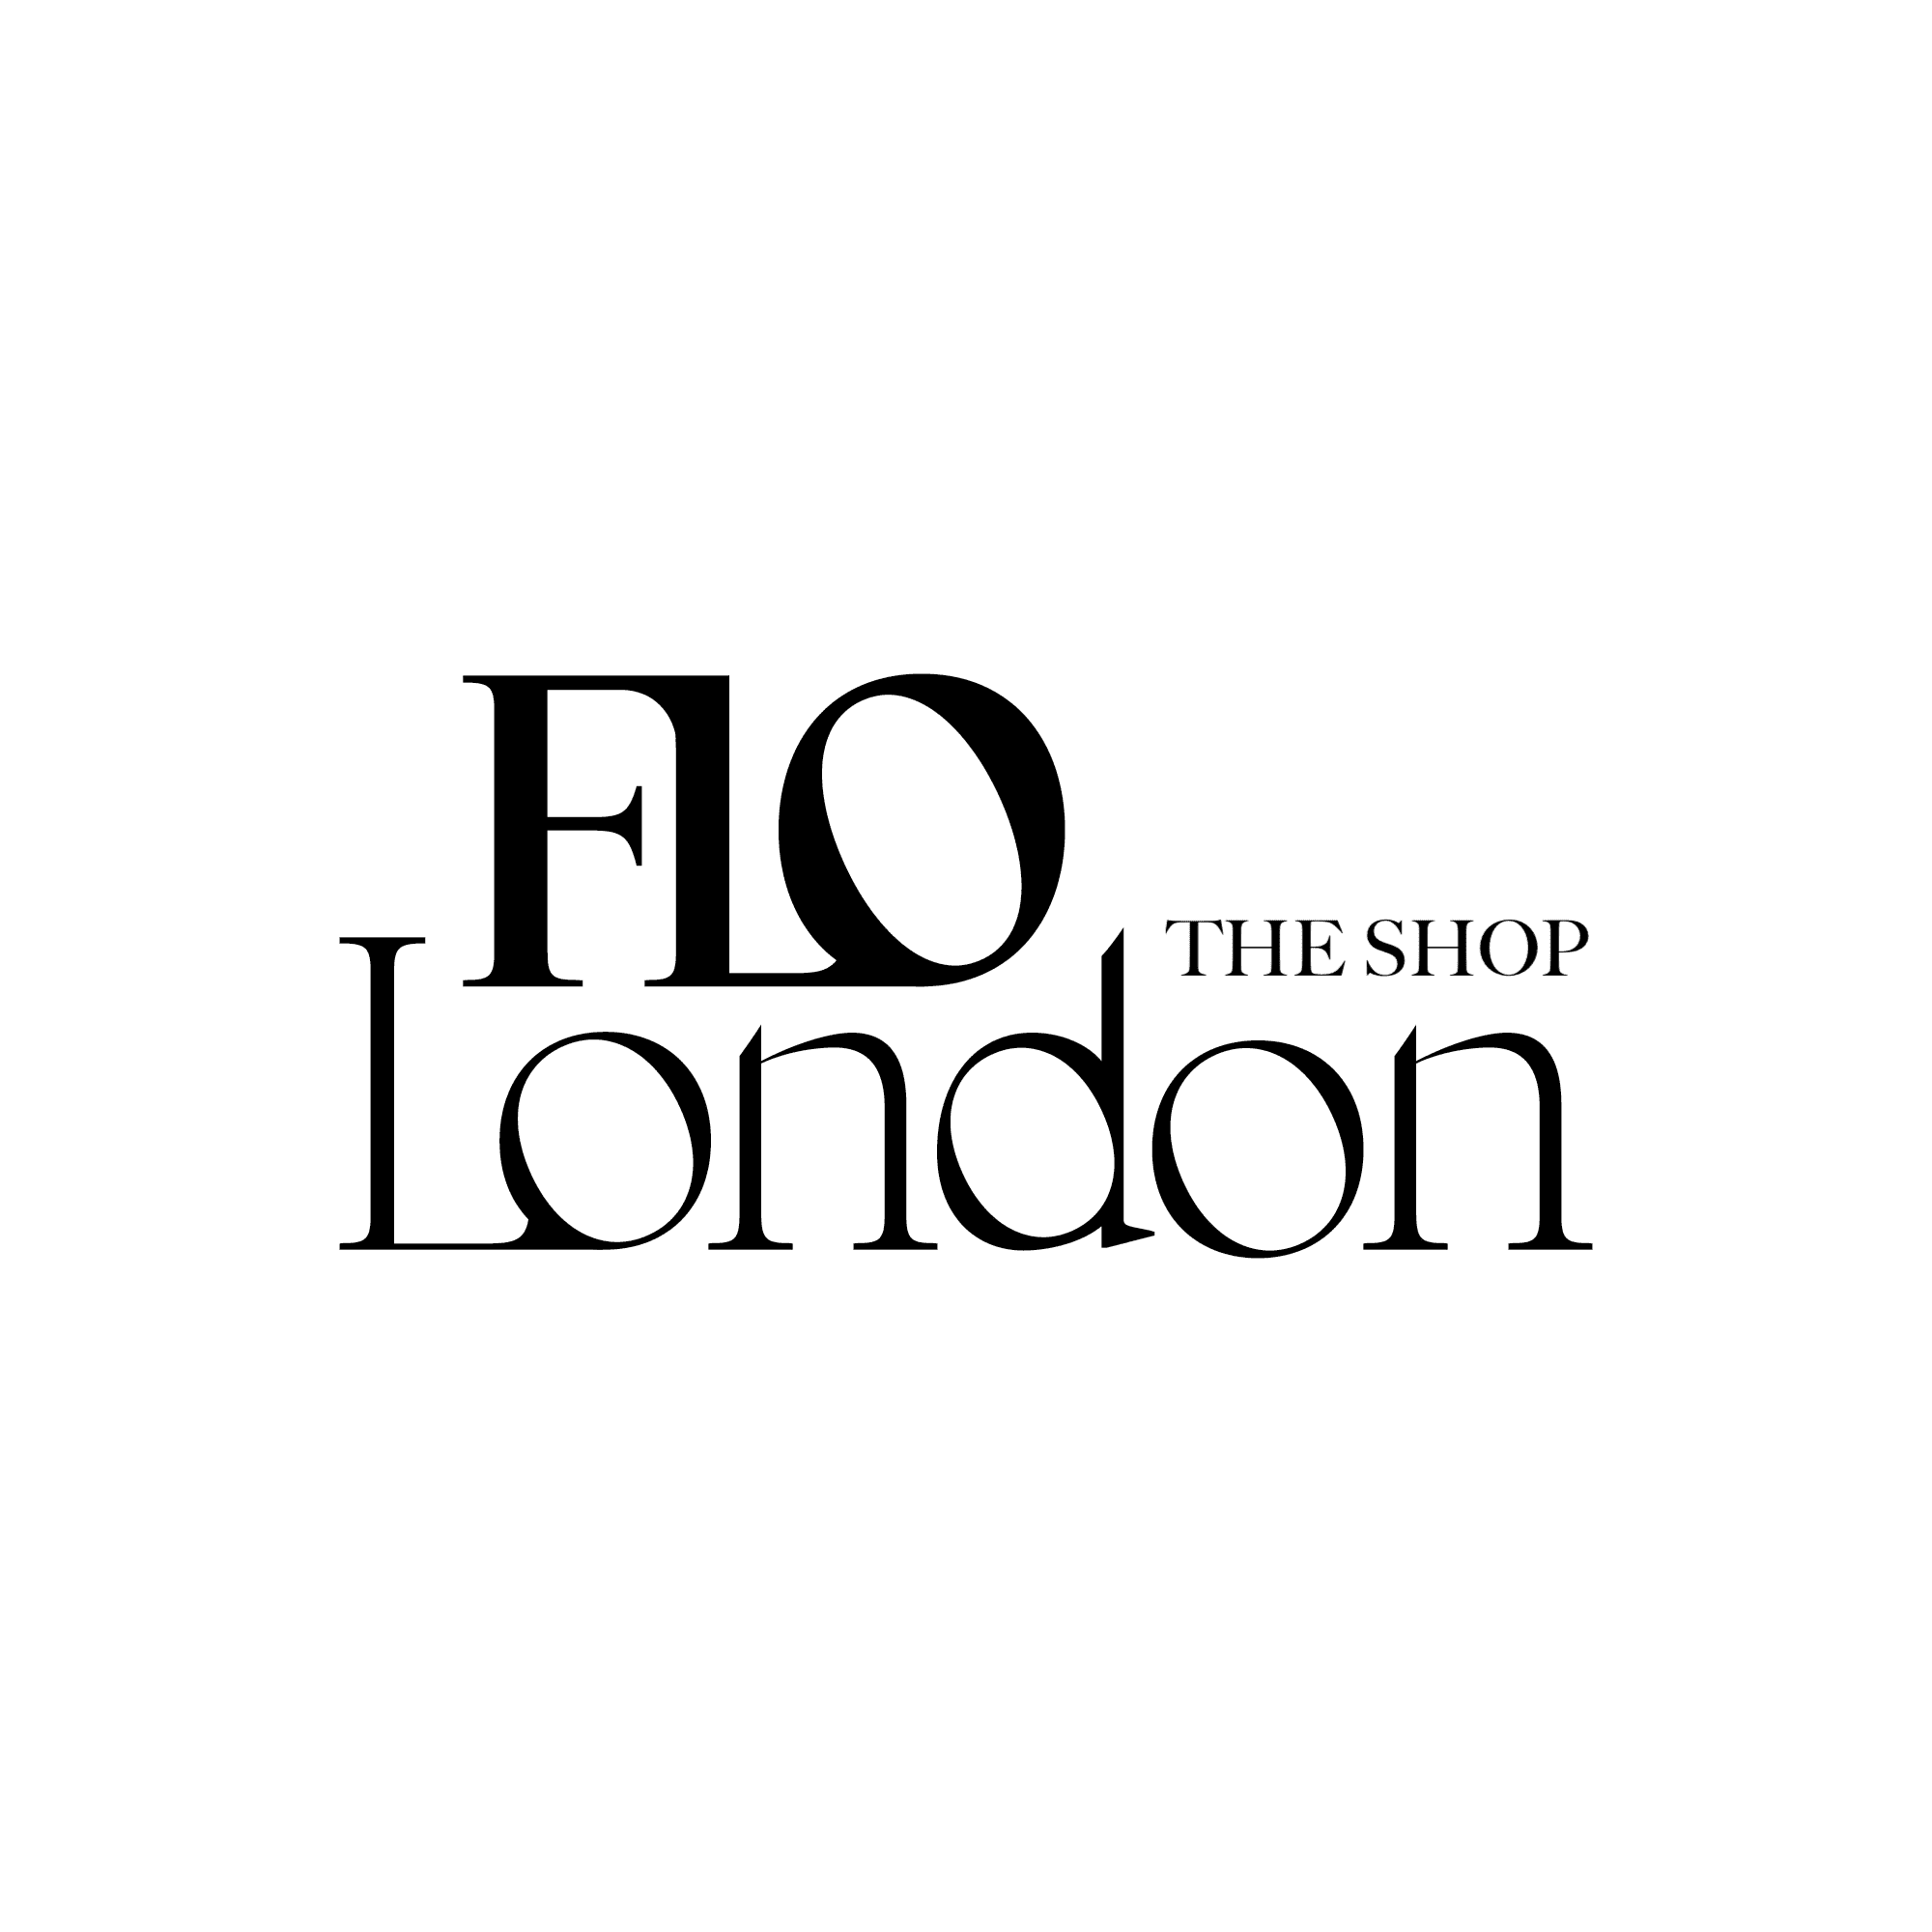 FLO London The Shop